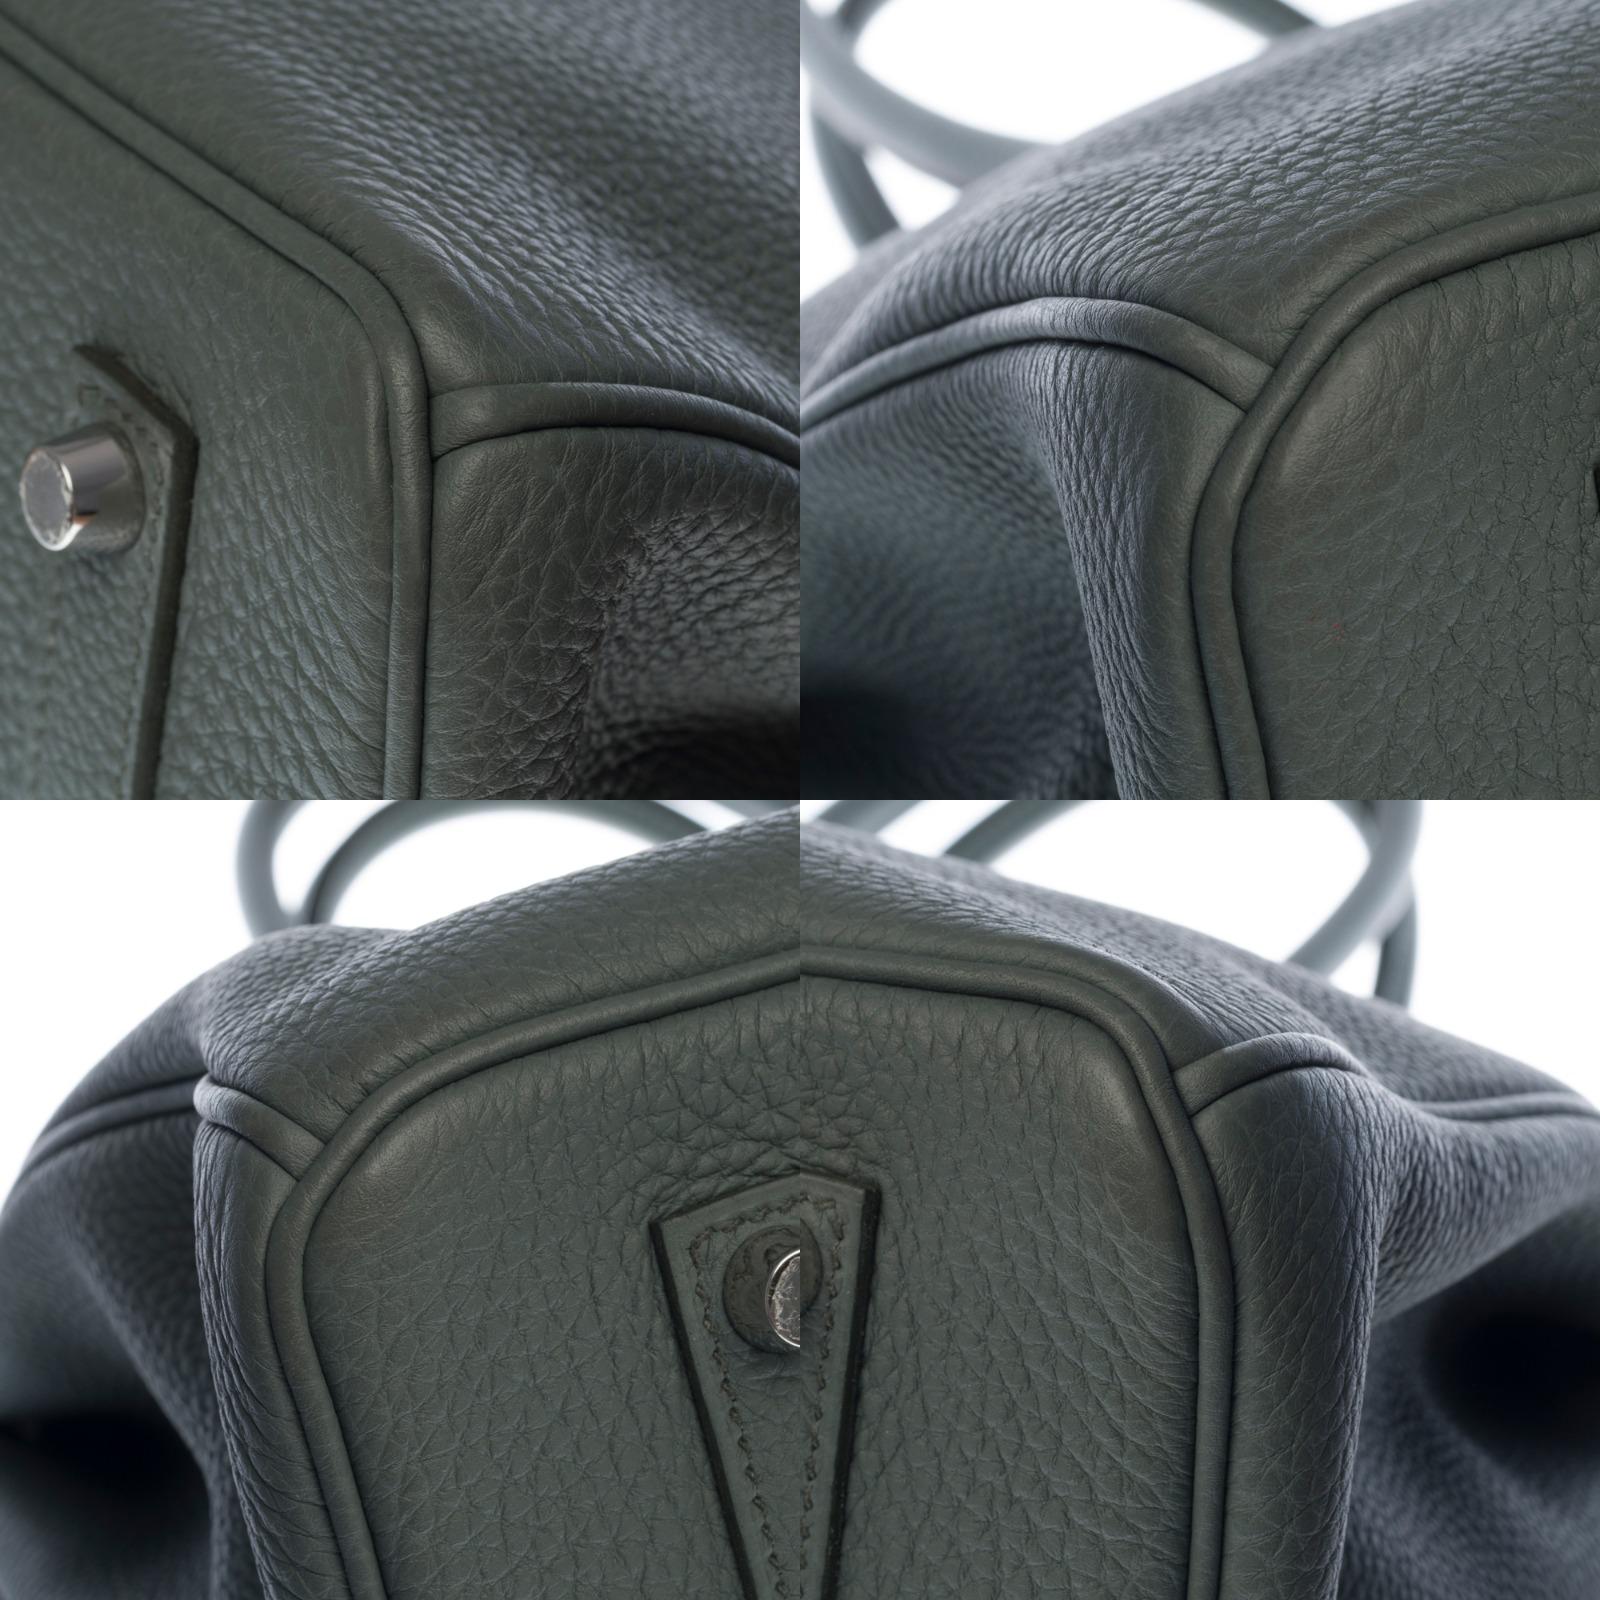 Hermès Birkin 35 handbag in Vert Amande Togo leather with silver hardware ! 2